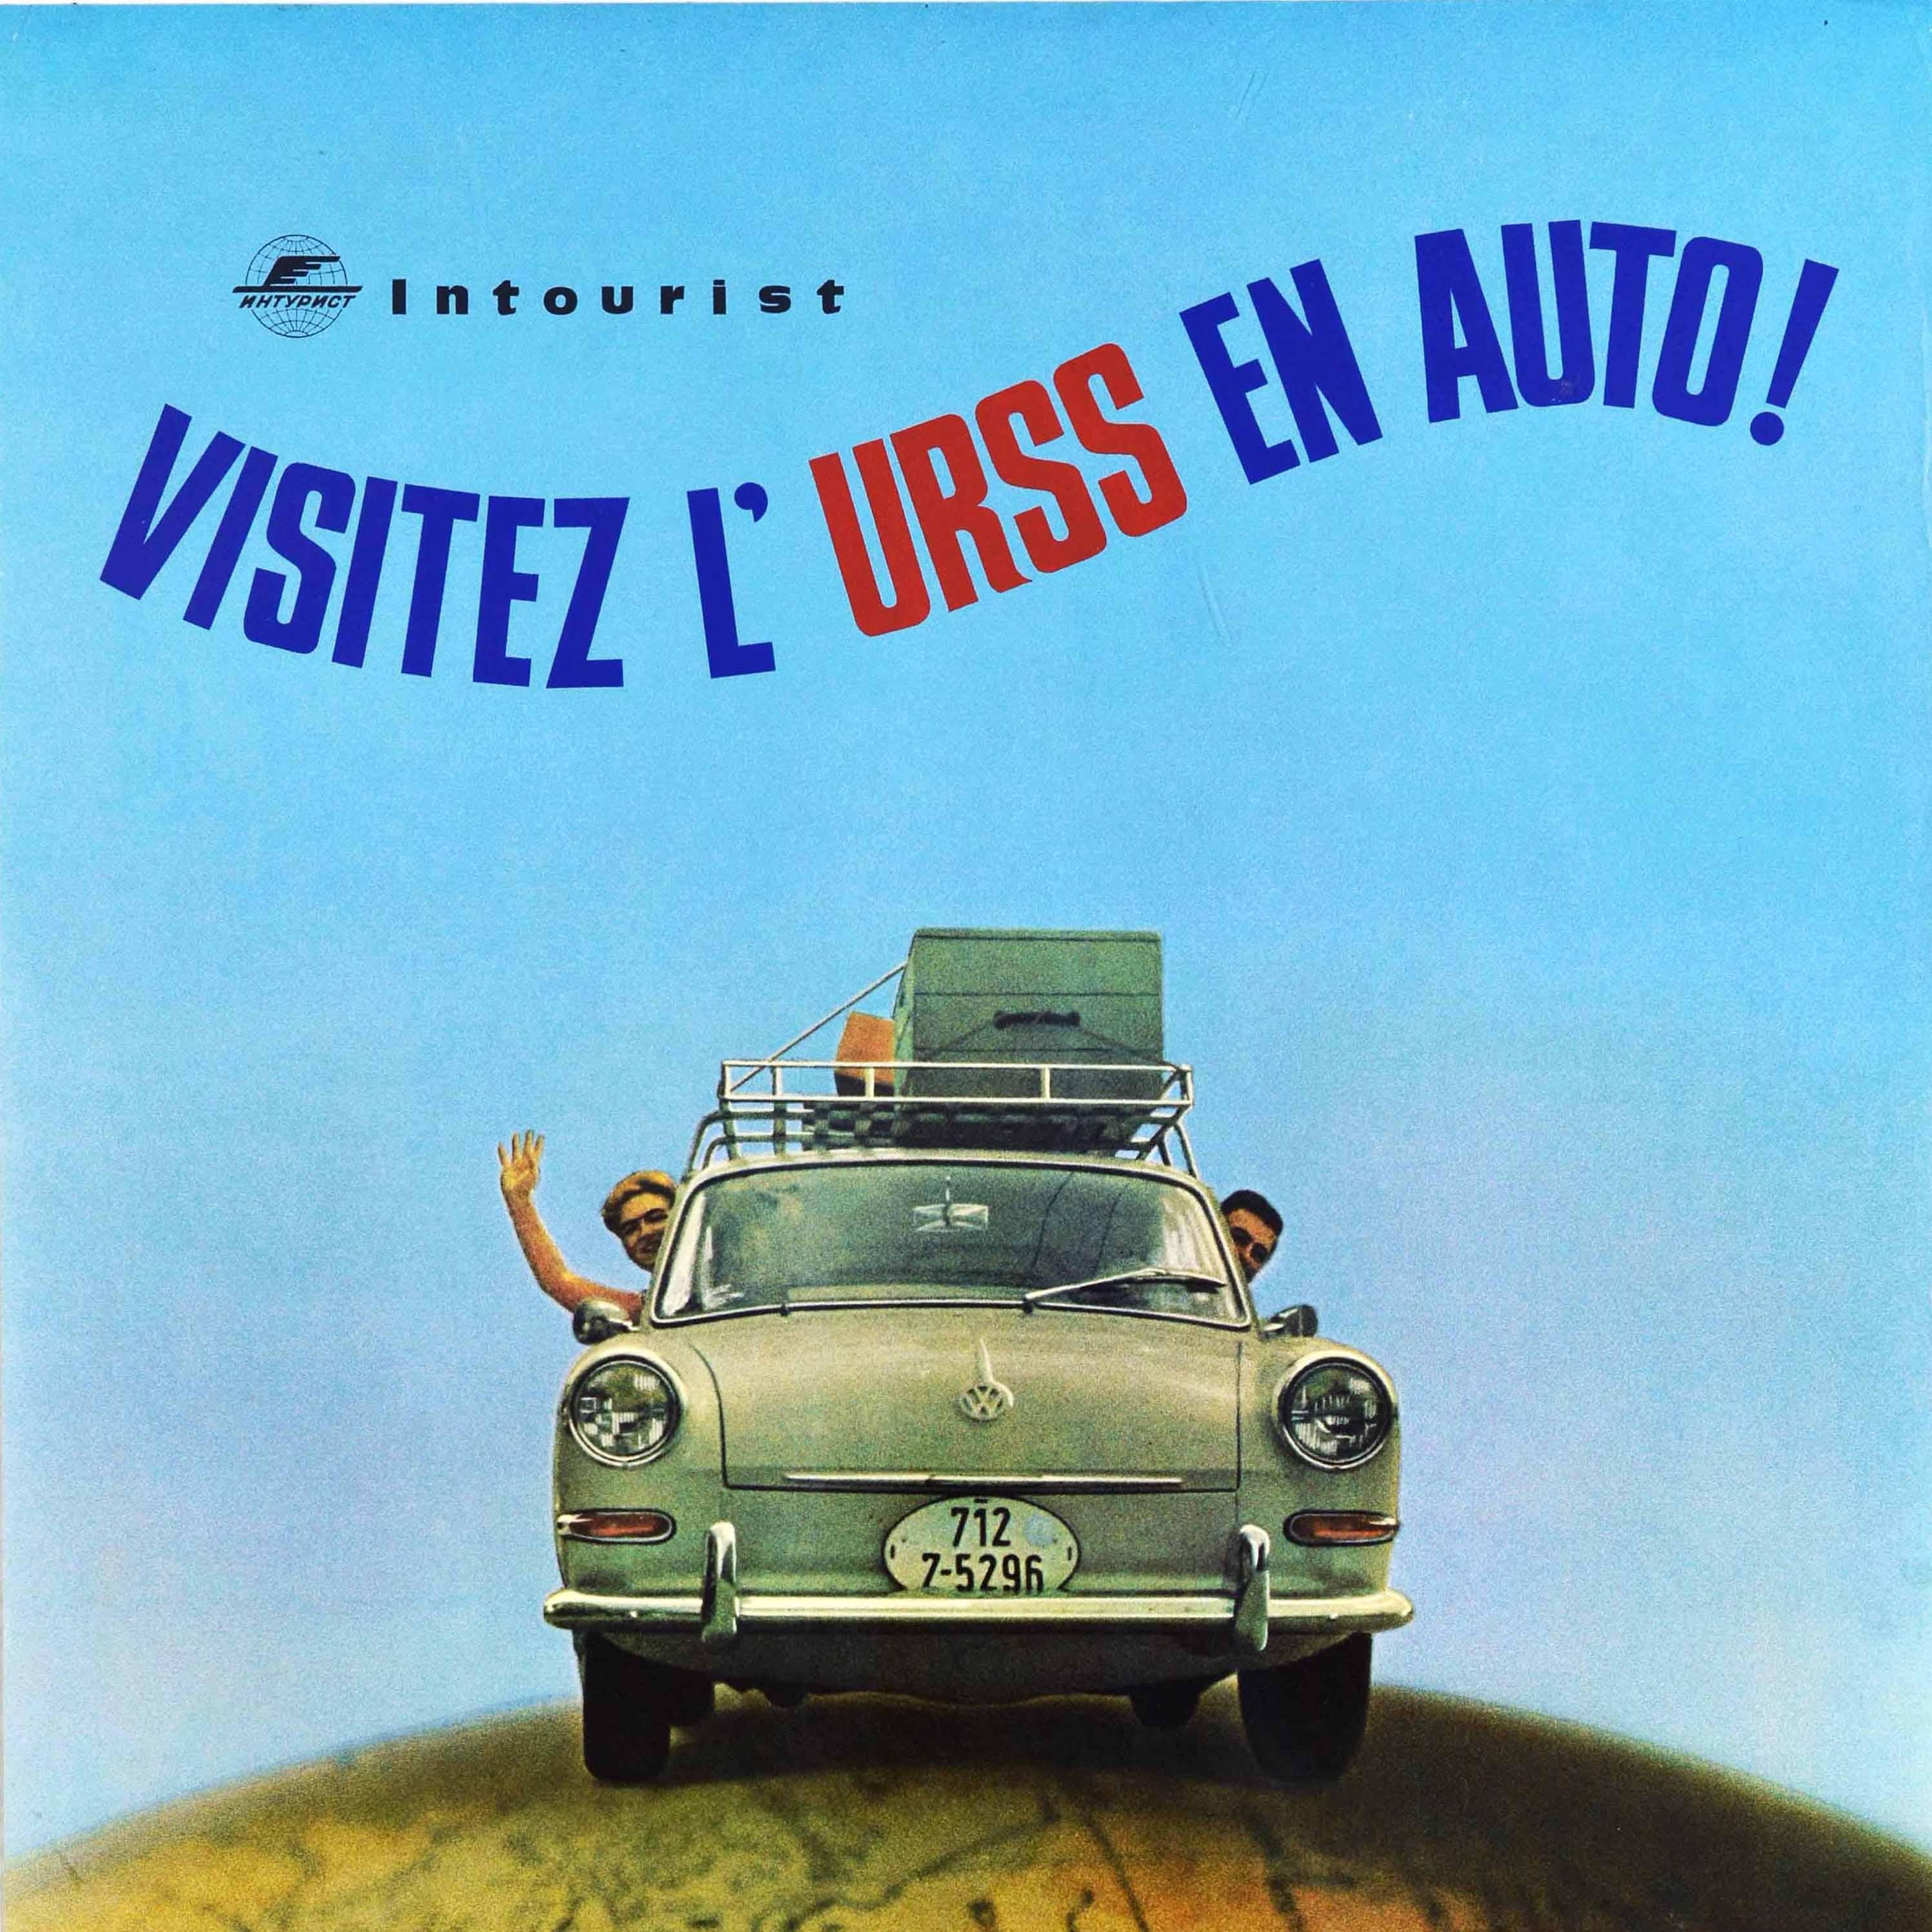 Affiche de voyage originale - Visitez L'URSS en Auto ! / Visitez l'URSS en Auto ! - émise par l'agence de voyage d'État soviétique Intourist, représentant un photomontage de deux personnes conduisant une voiture Volkswagen sur une carte colorée de